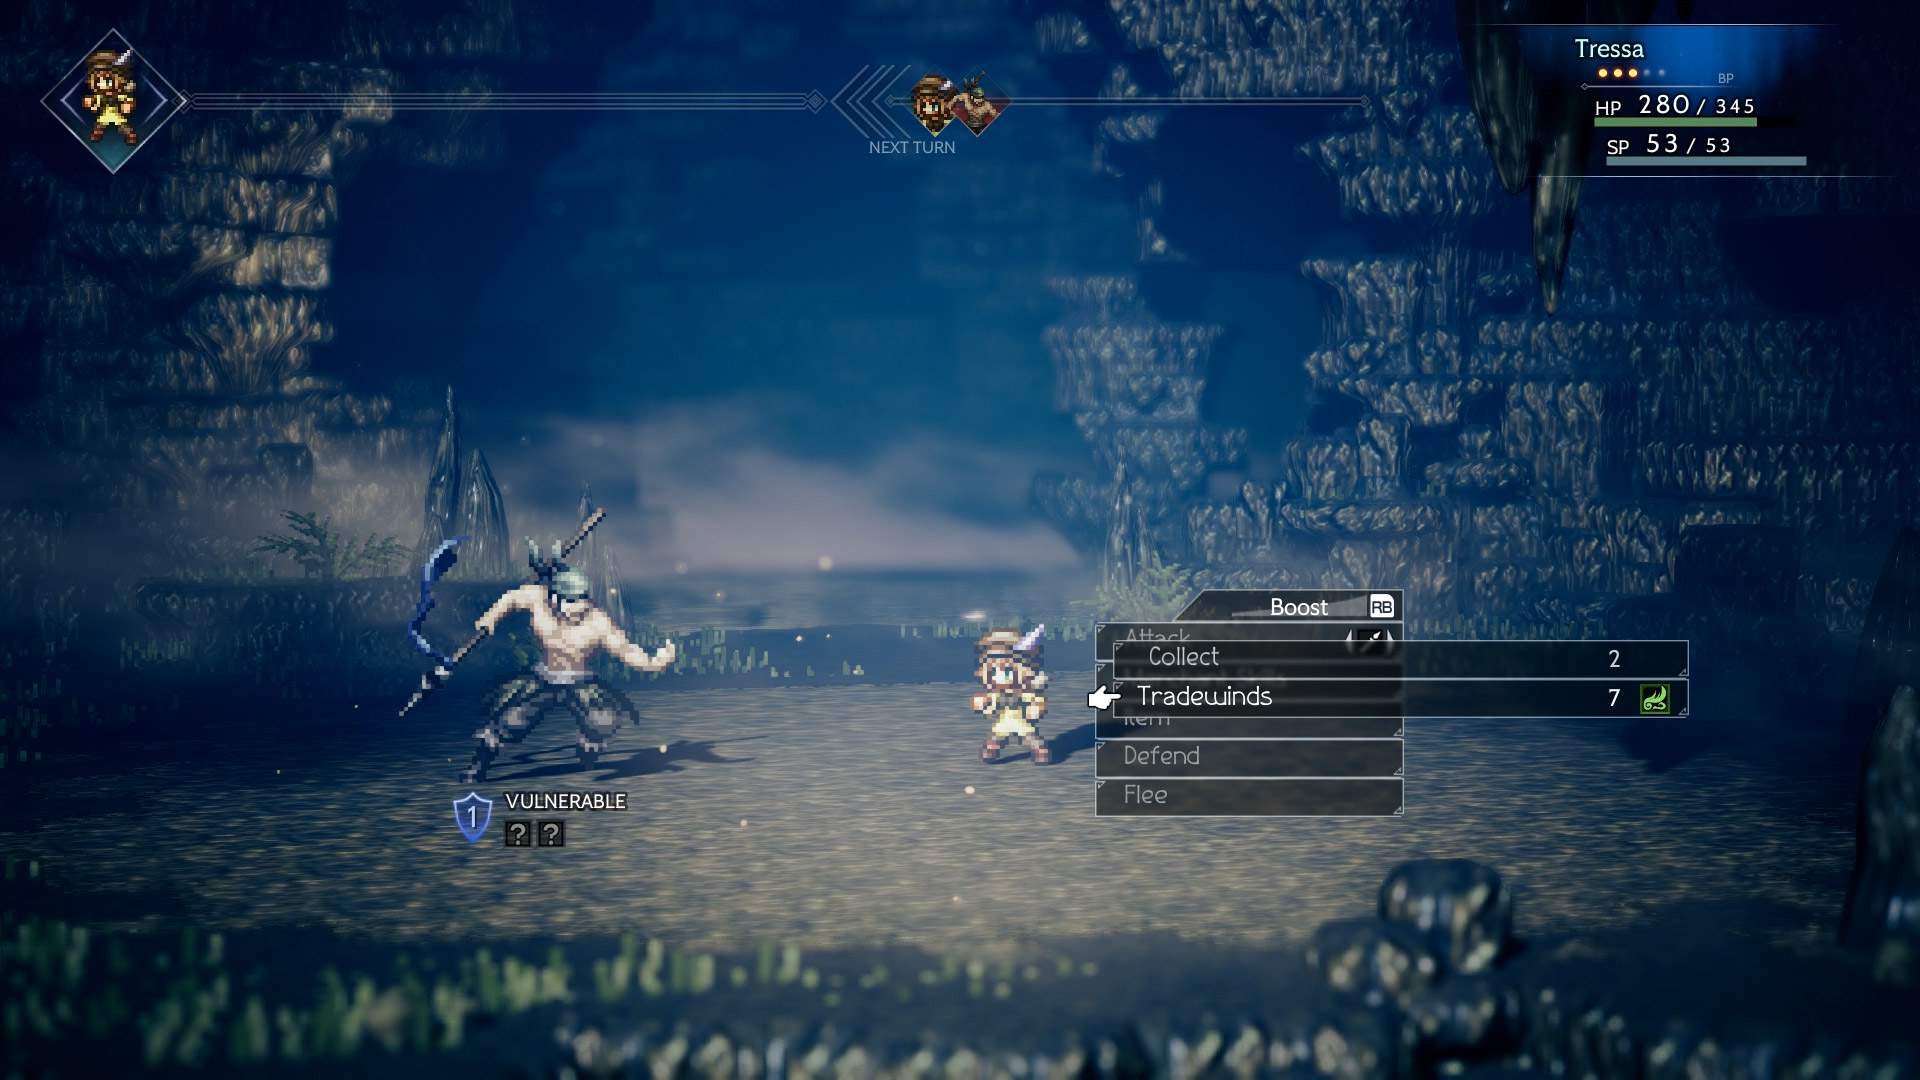 Captura de tela do combate em uma masmorra sinistra: Tressa lutando contra um inimigo em combate por turnos.